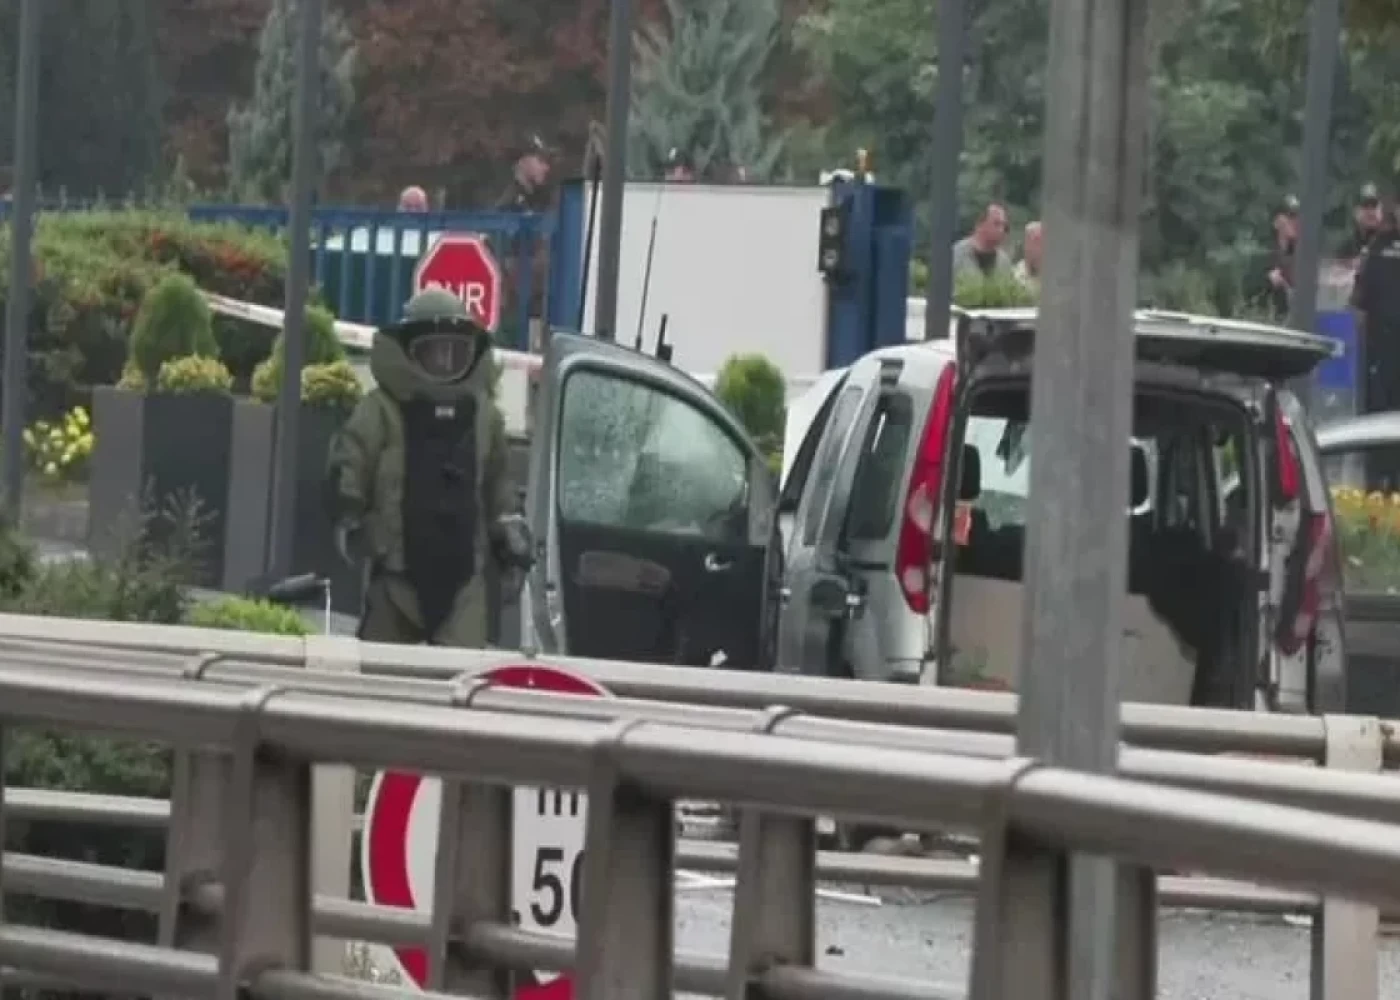 Türkiyədə terrorçularla qarşıdurma anlarının görüntüsü yayıldı -VİDEO